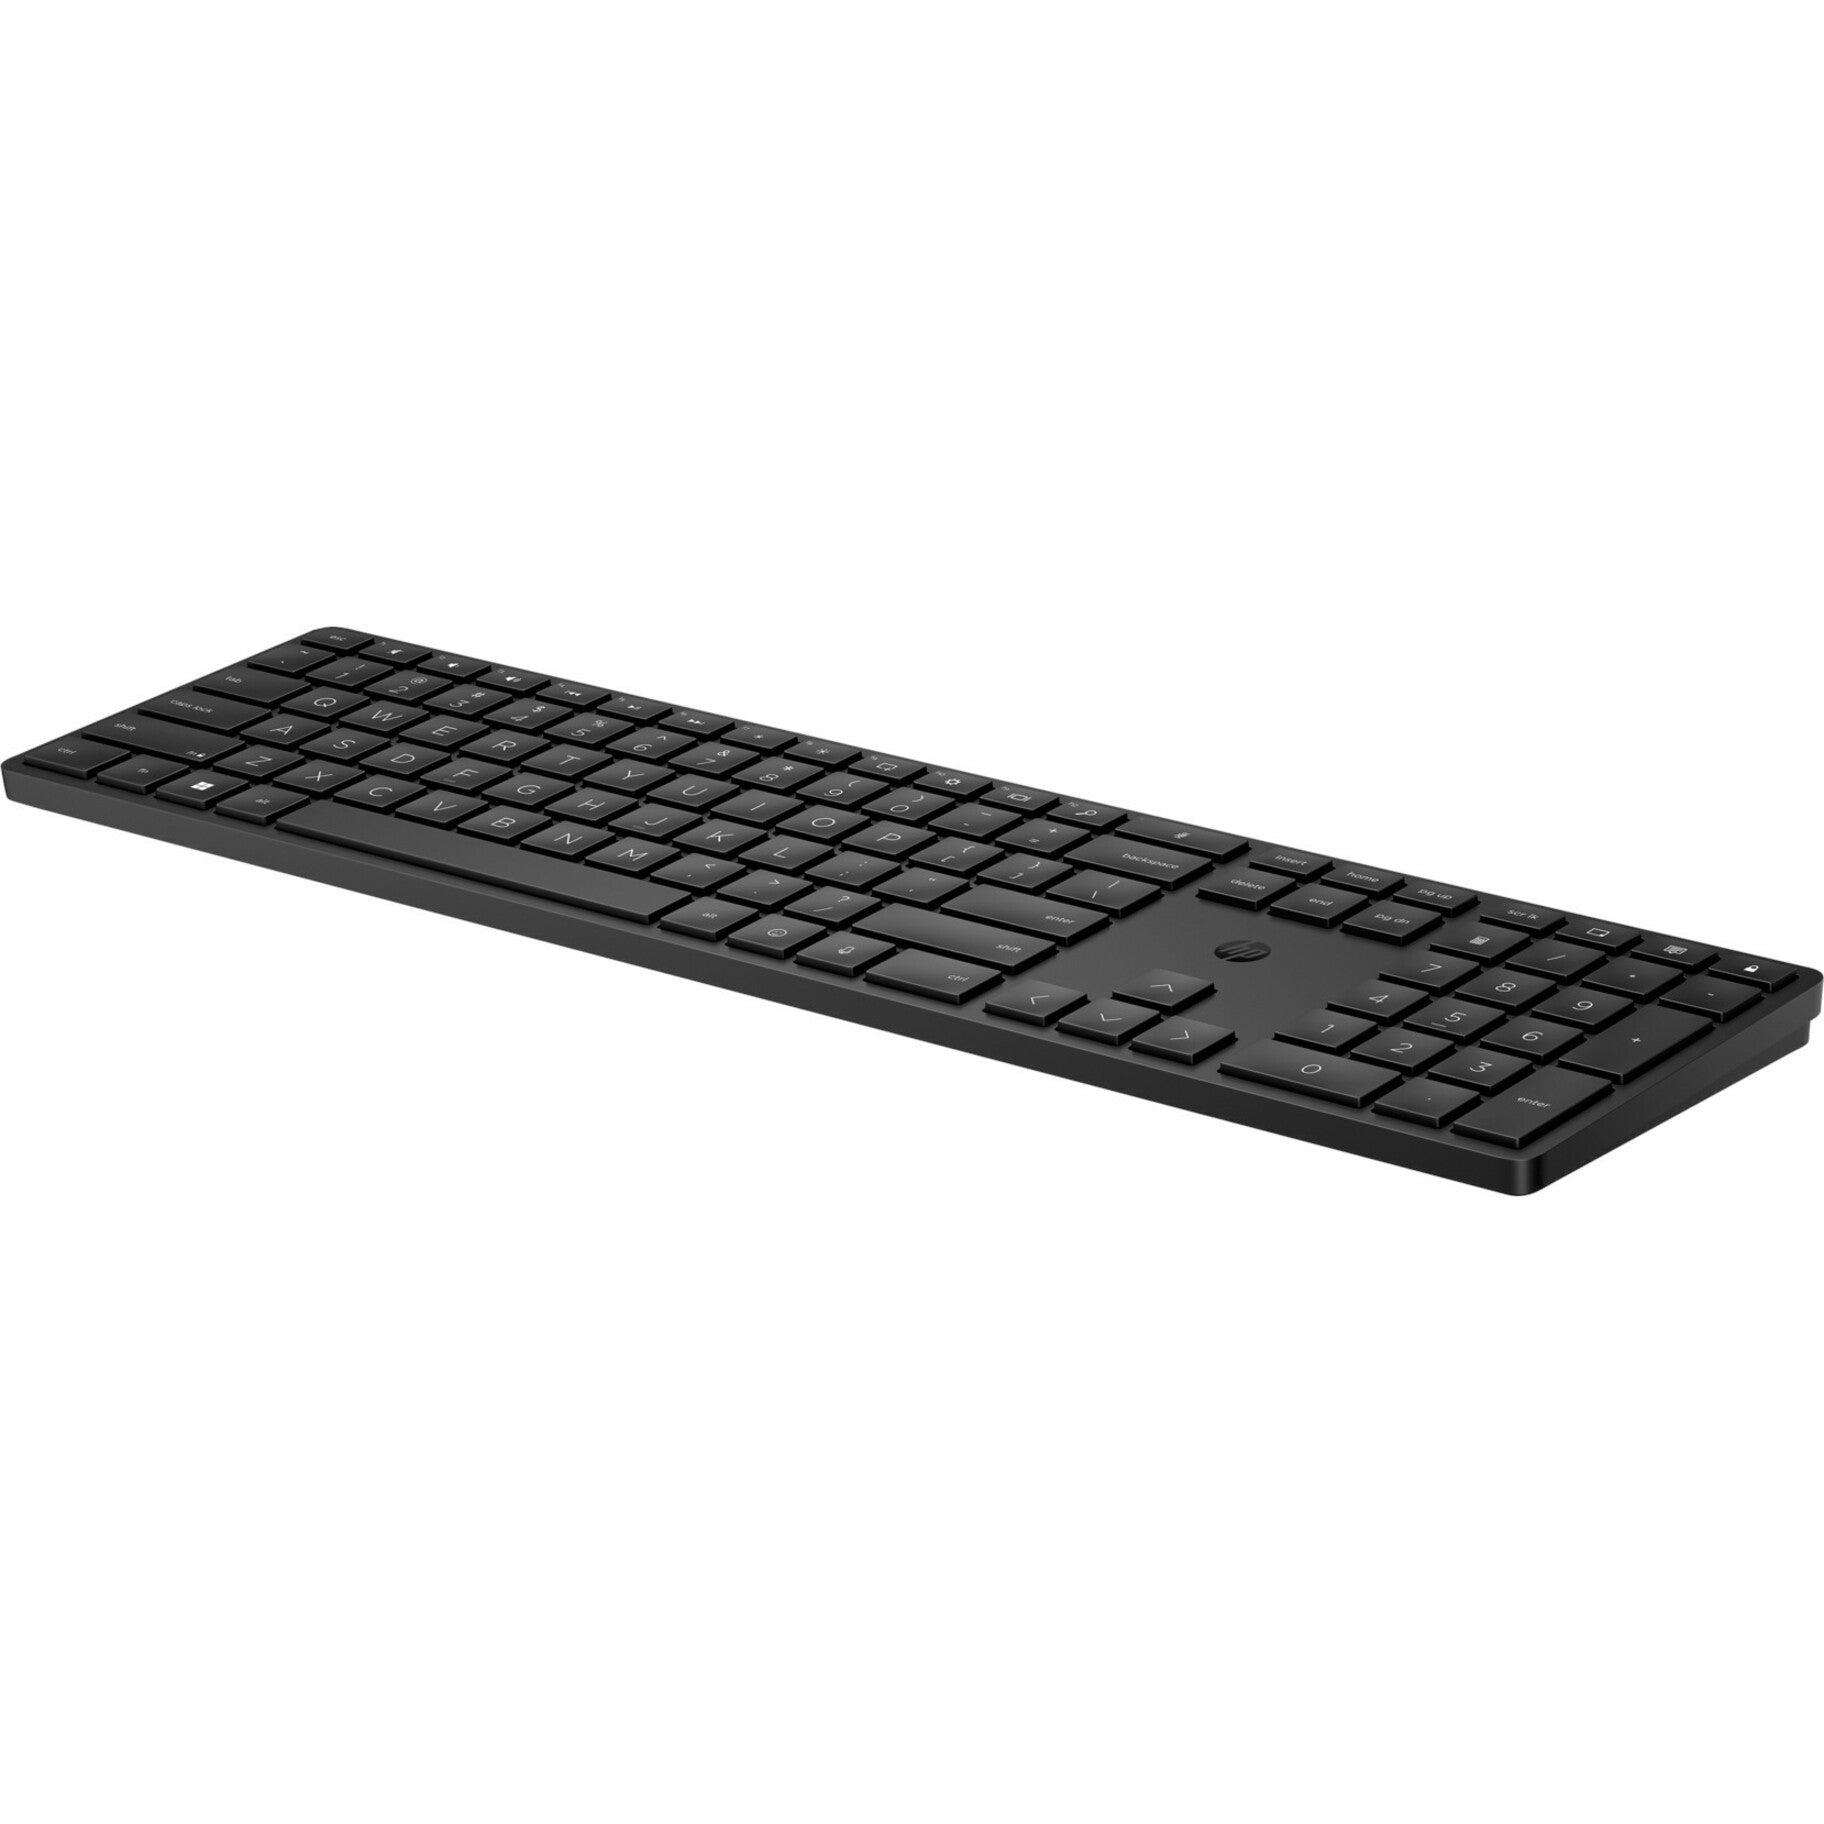 HP 455 Programmable Wireless Keyboard, English (US), Battery Indicator, LED Indicator